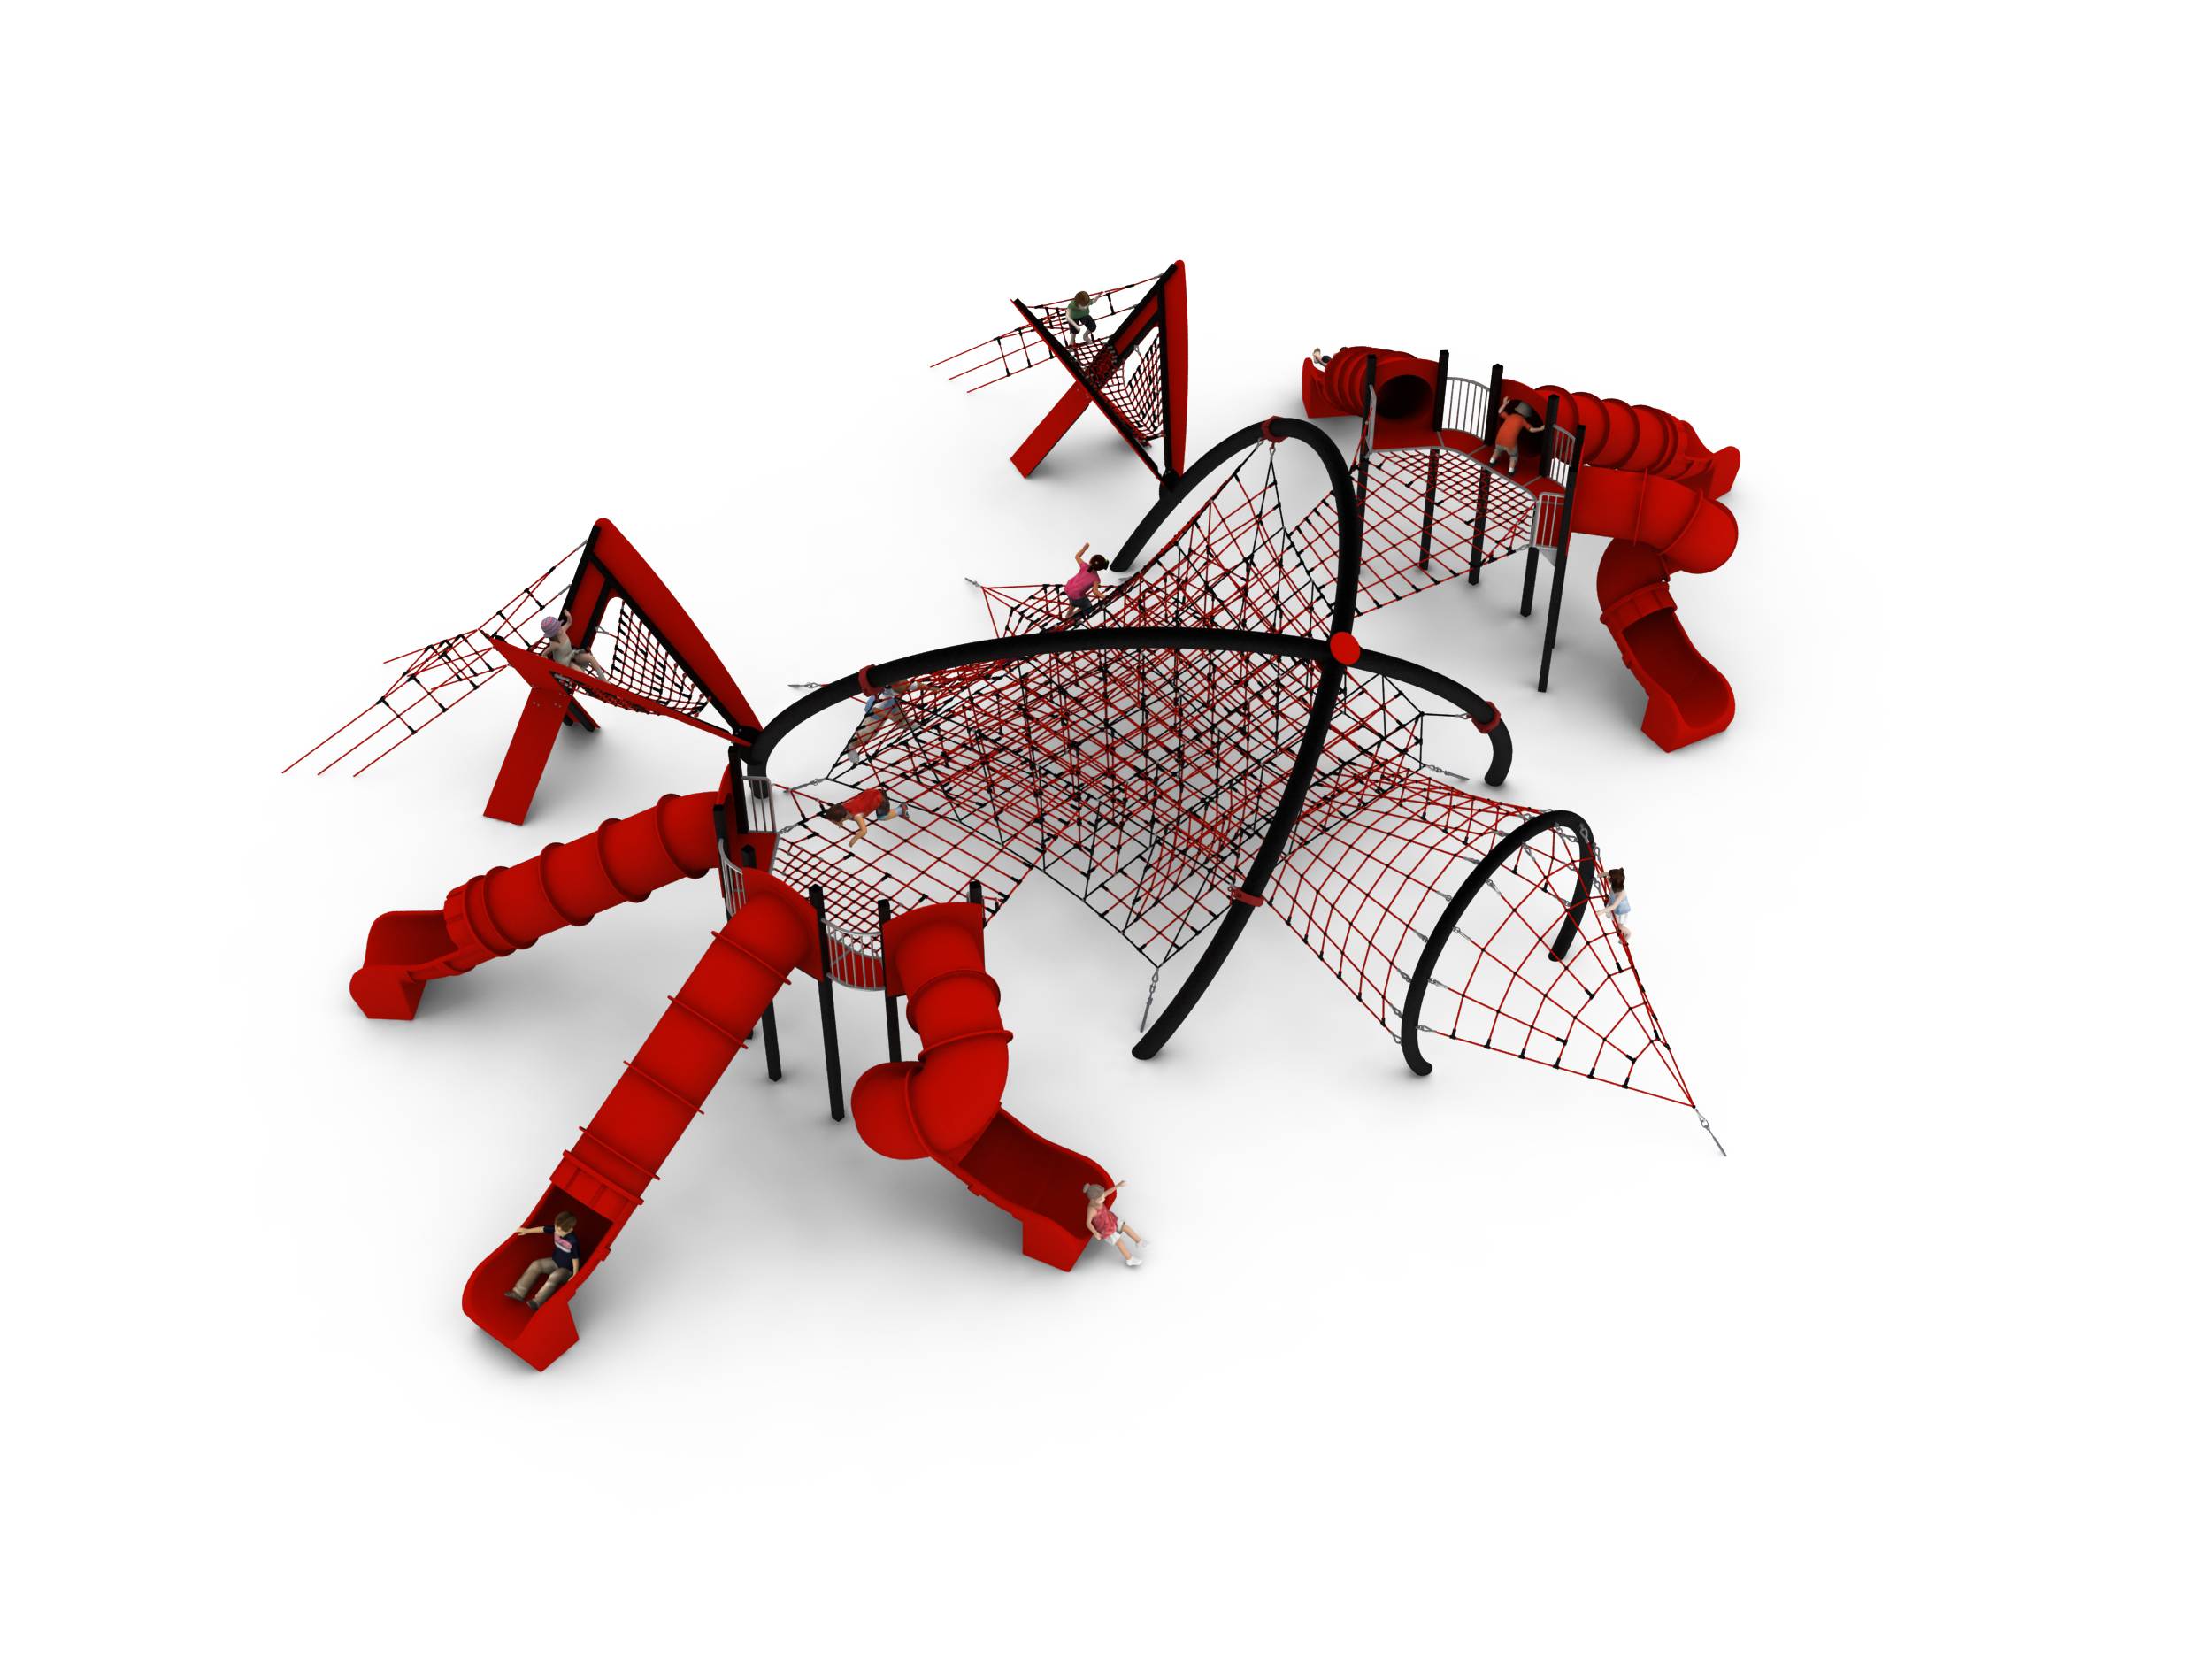 aire de jeux araignée géante structure en acier, filet spécial, toboggans, siège suspendu jeu d'extérieur pour enfants